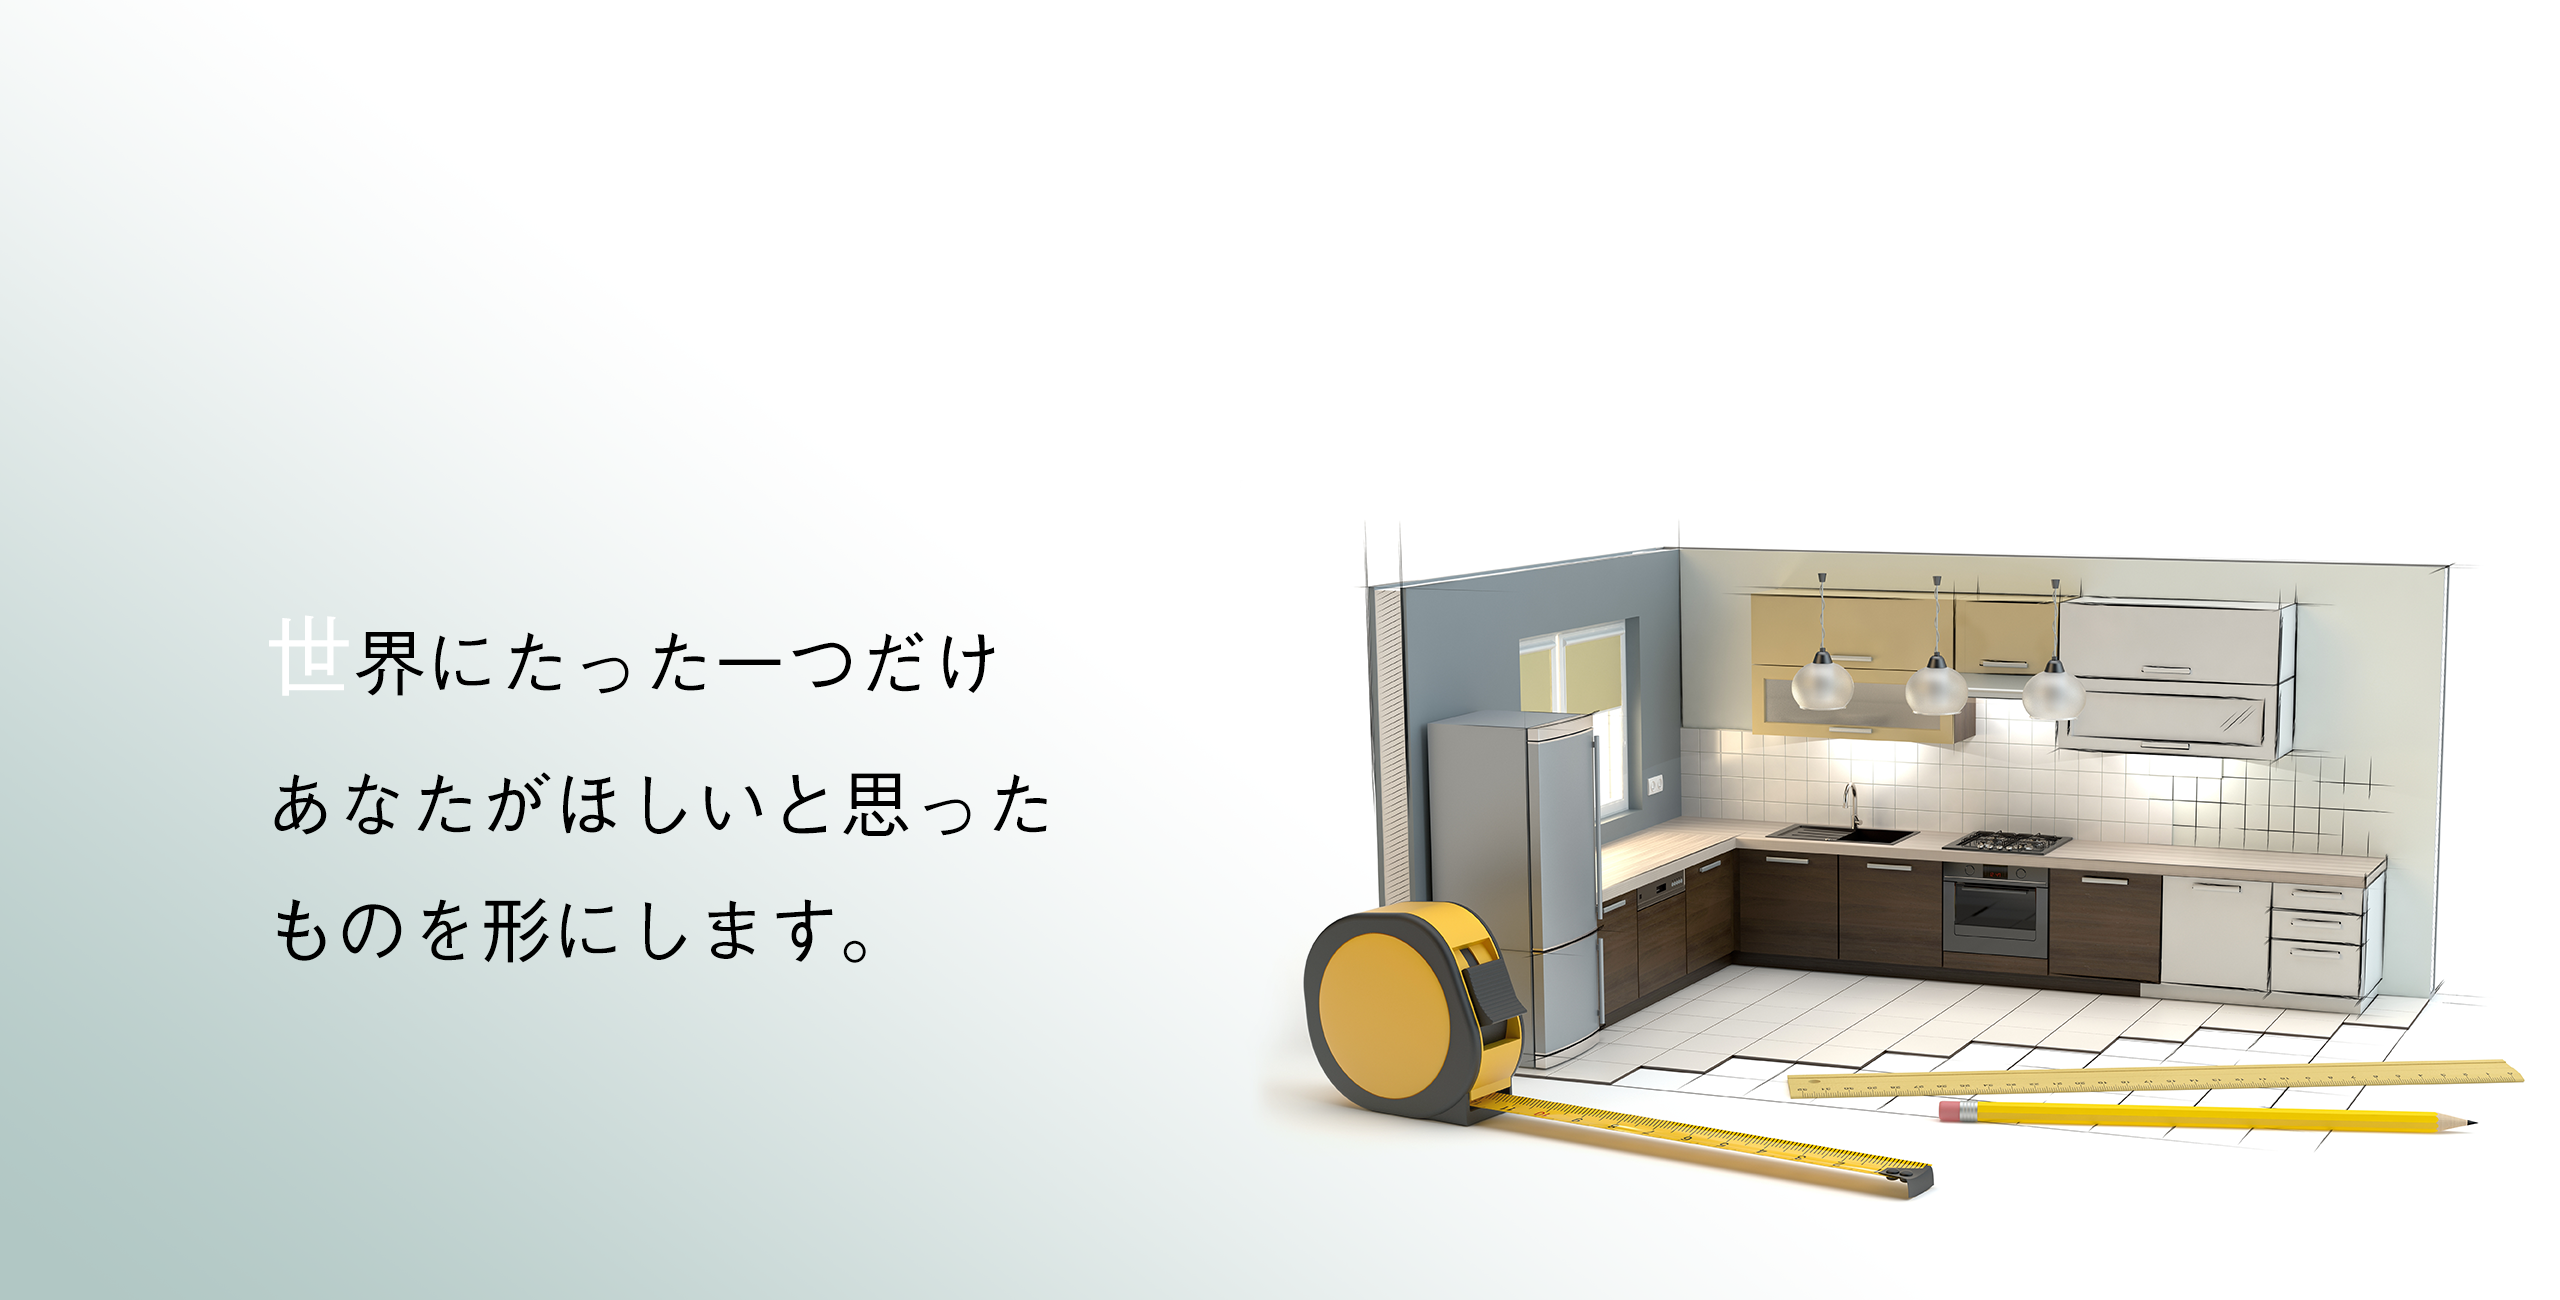 オーダーメイド家具なら大阪のオーダーメイド家具アルファインにお任せください。